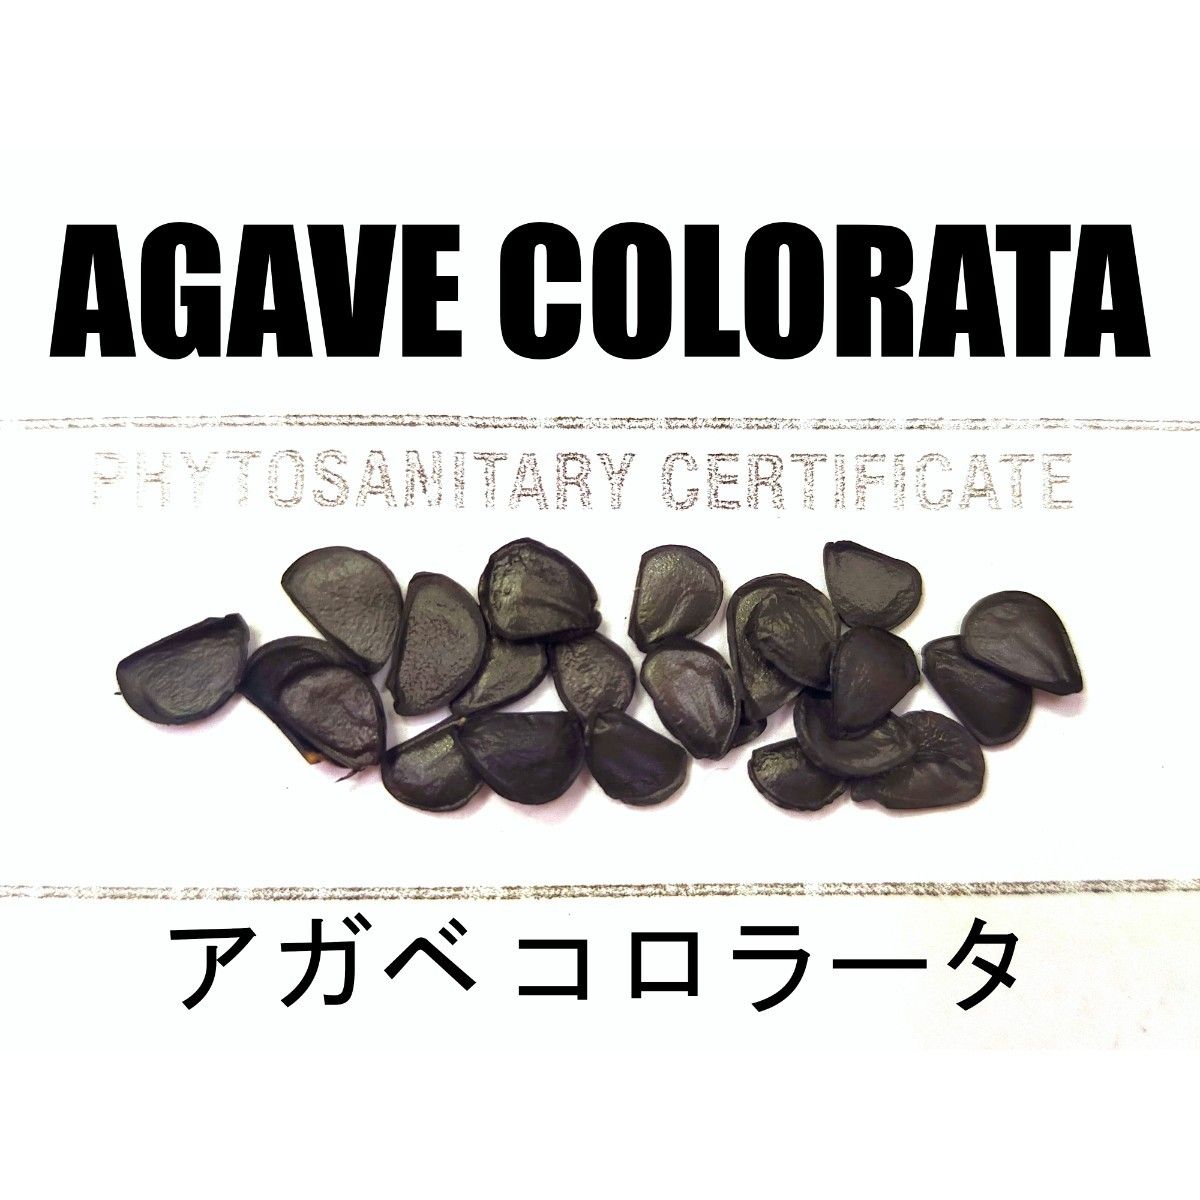 1月入荷 10粒+ アガベ コロラータ 種子 種子 colorata